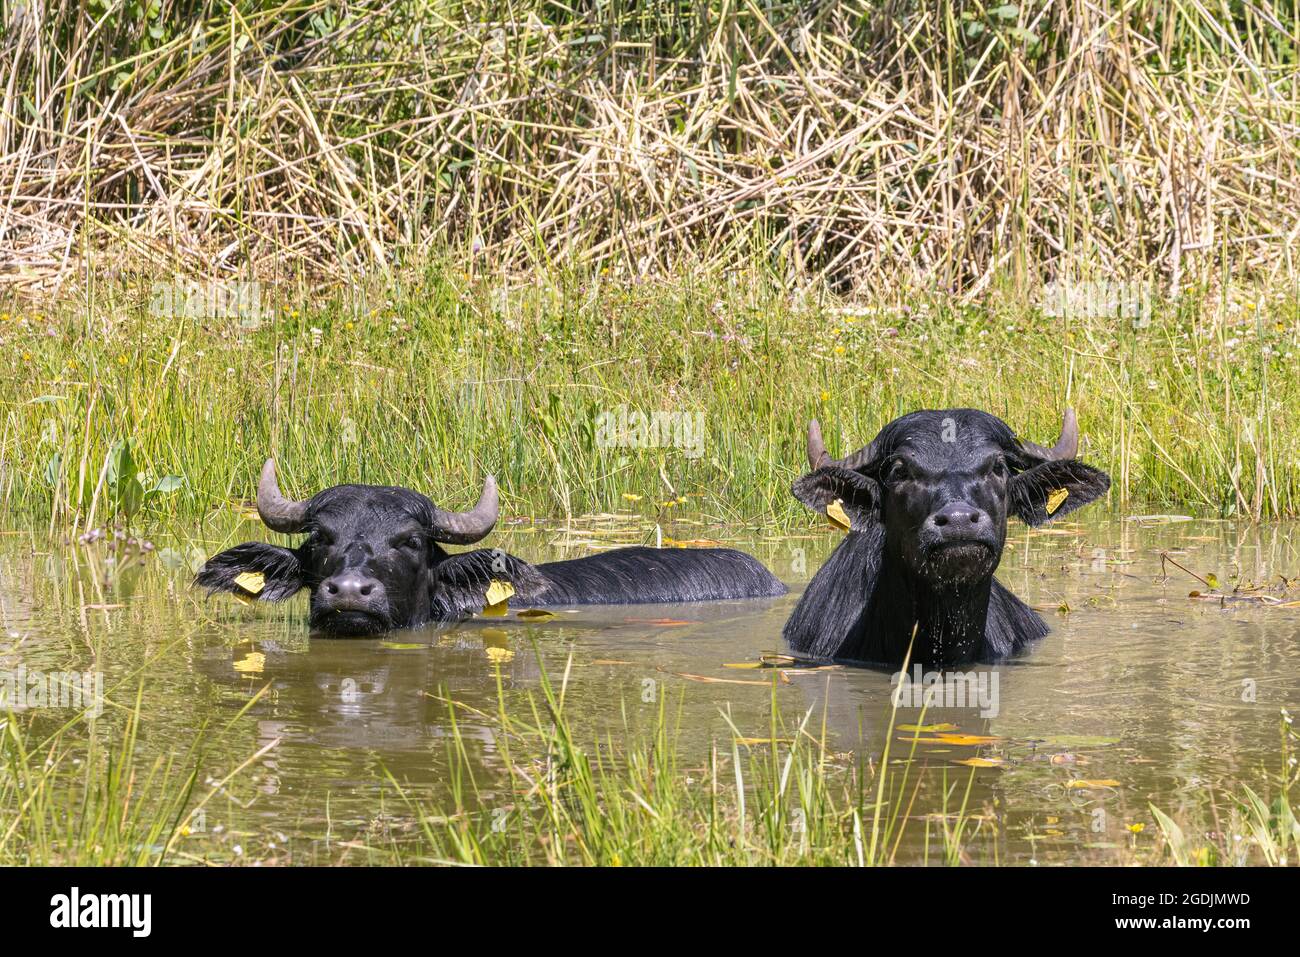 Asiatische Wasserbüffel, Anoas (Bubalus spec.), zwei asiatische Wasserbüffel, die in einem Teich baden, Deutschland Stockfoto